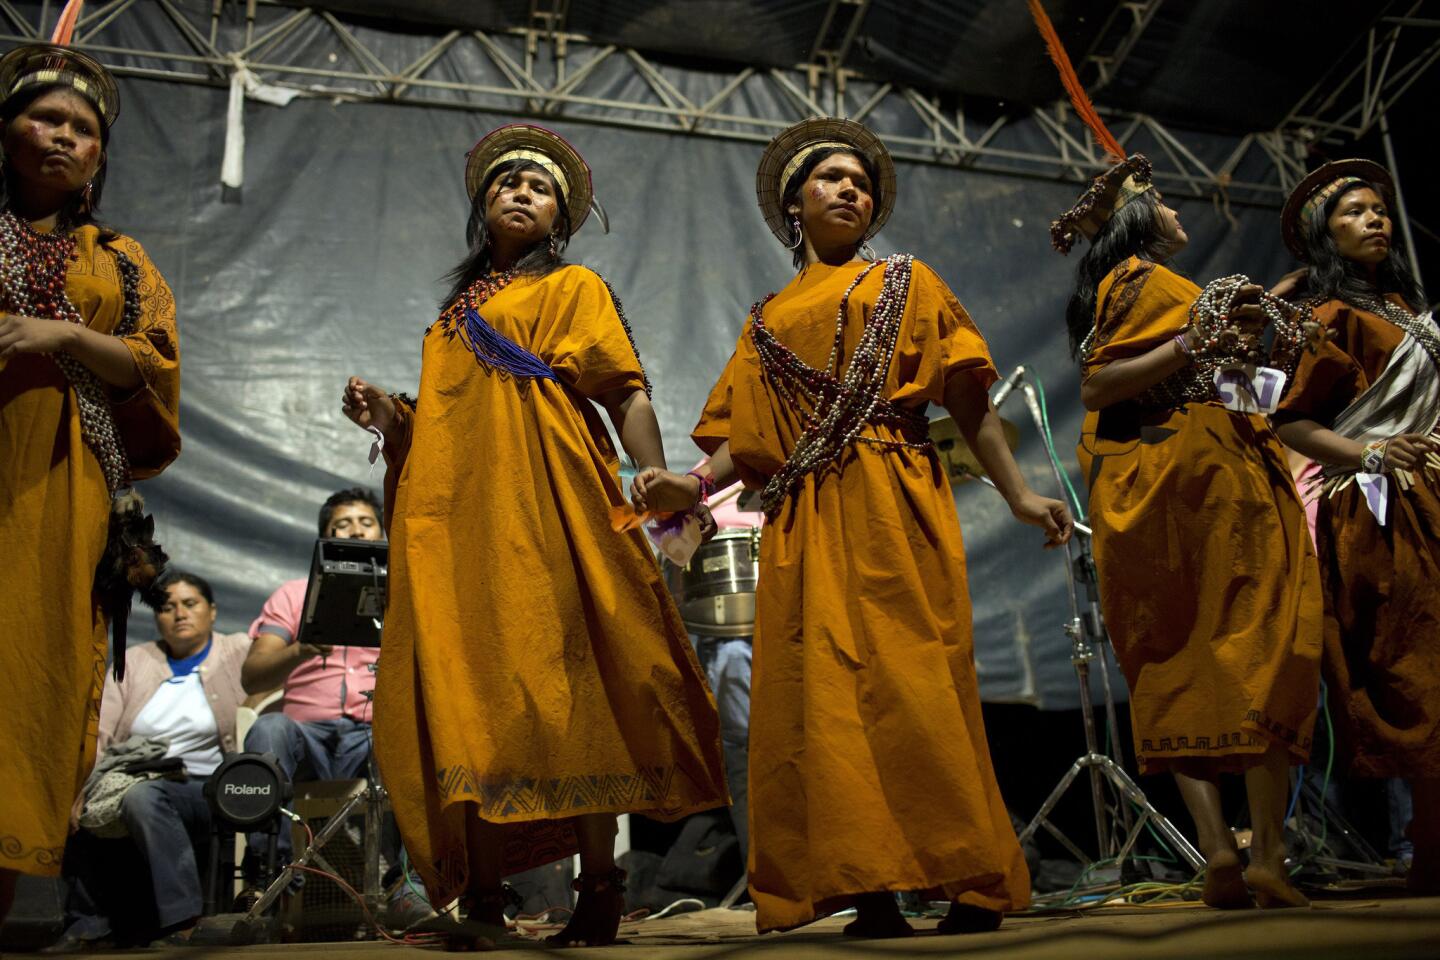 Concursantes de un certámen de belleza asháninka bailan sobre el escenario, en uno de los actos con loa que se celebra la fundación de la comunidad de Otari Nativo.